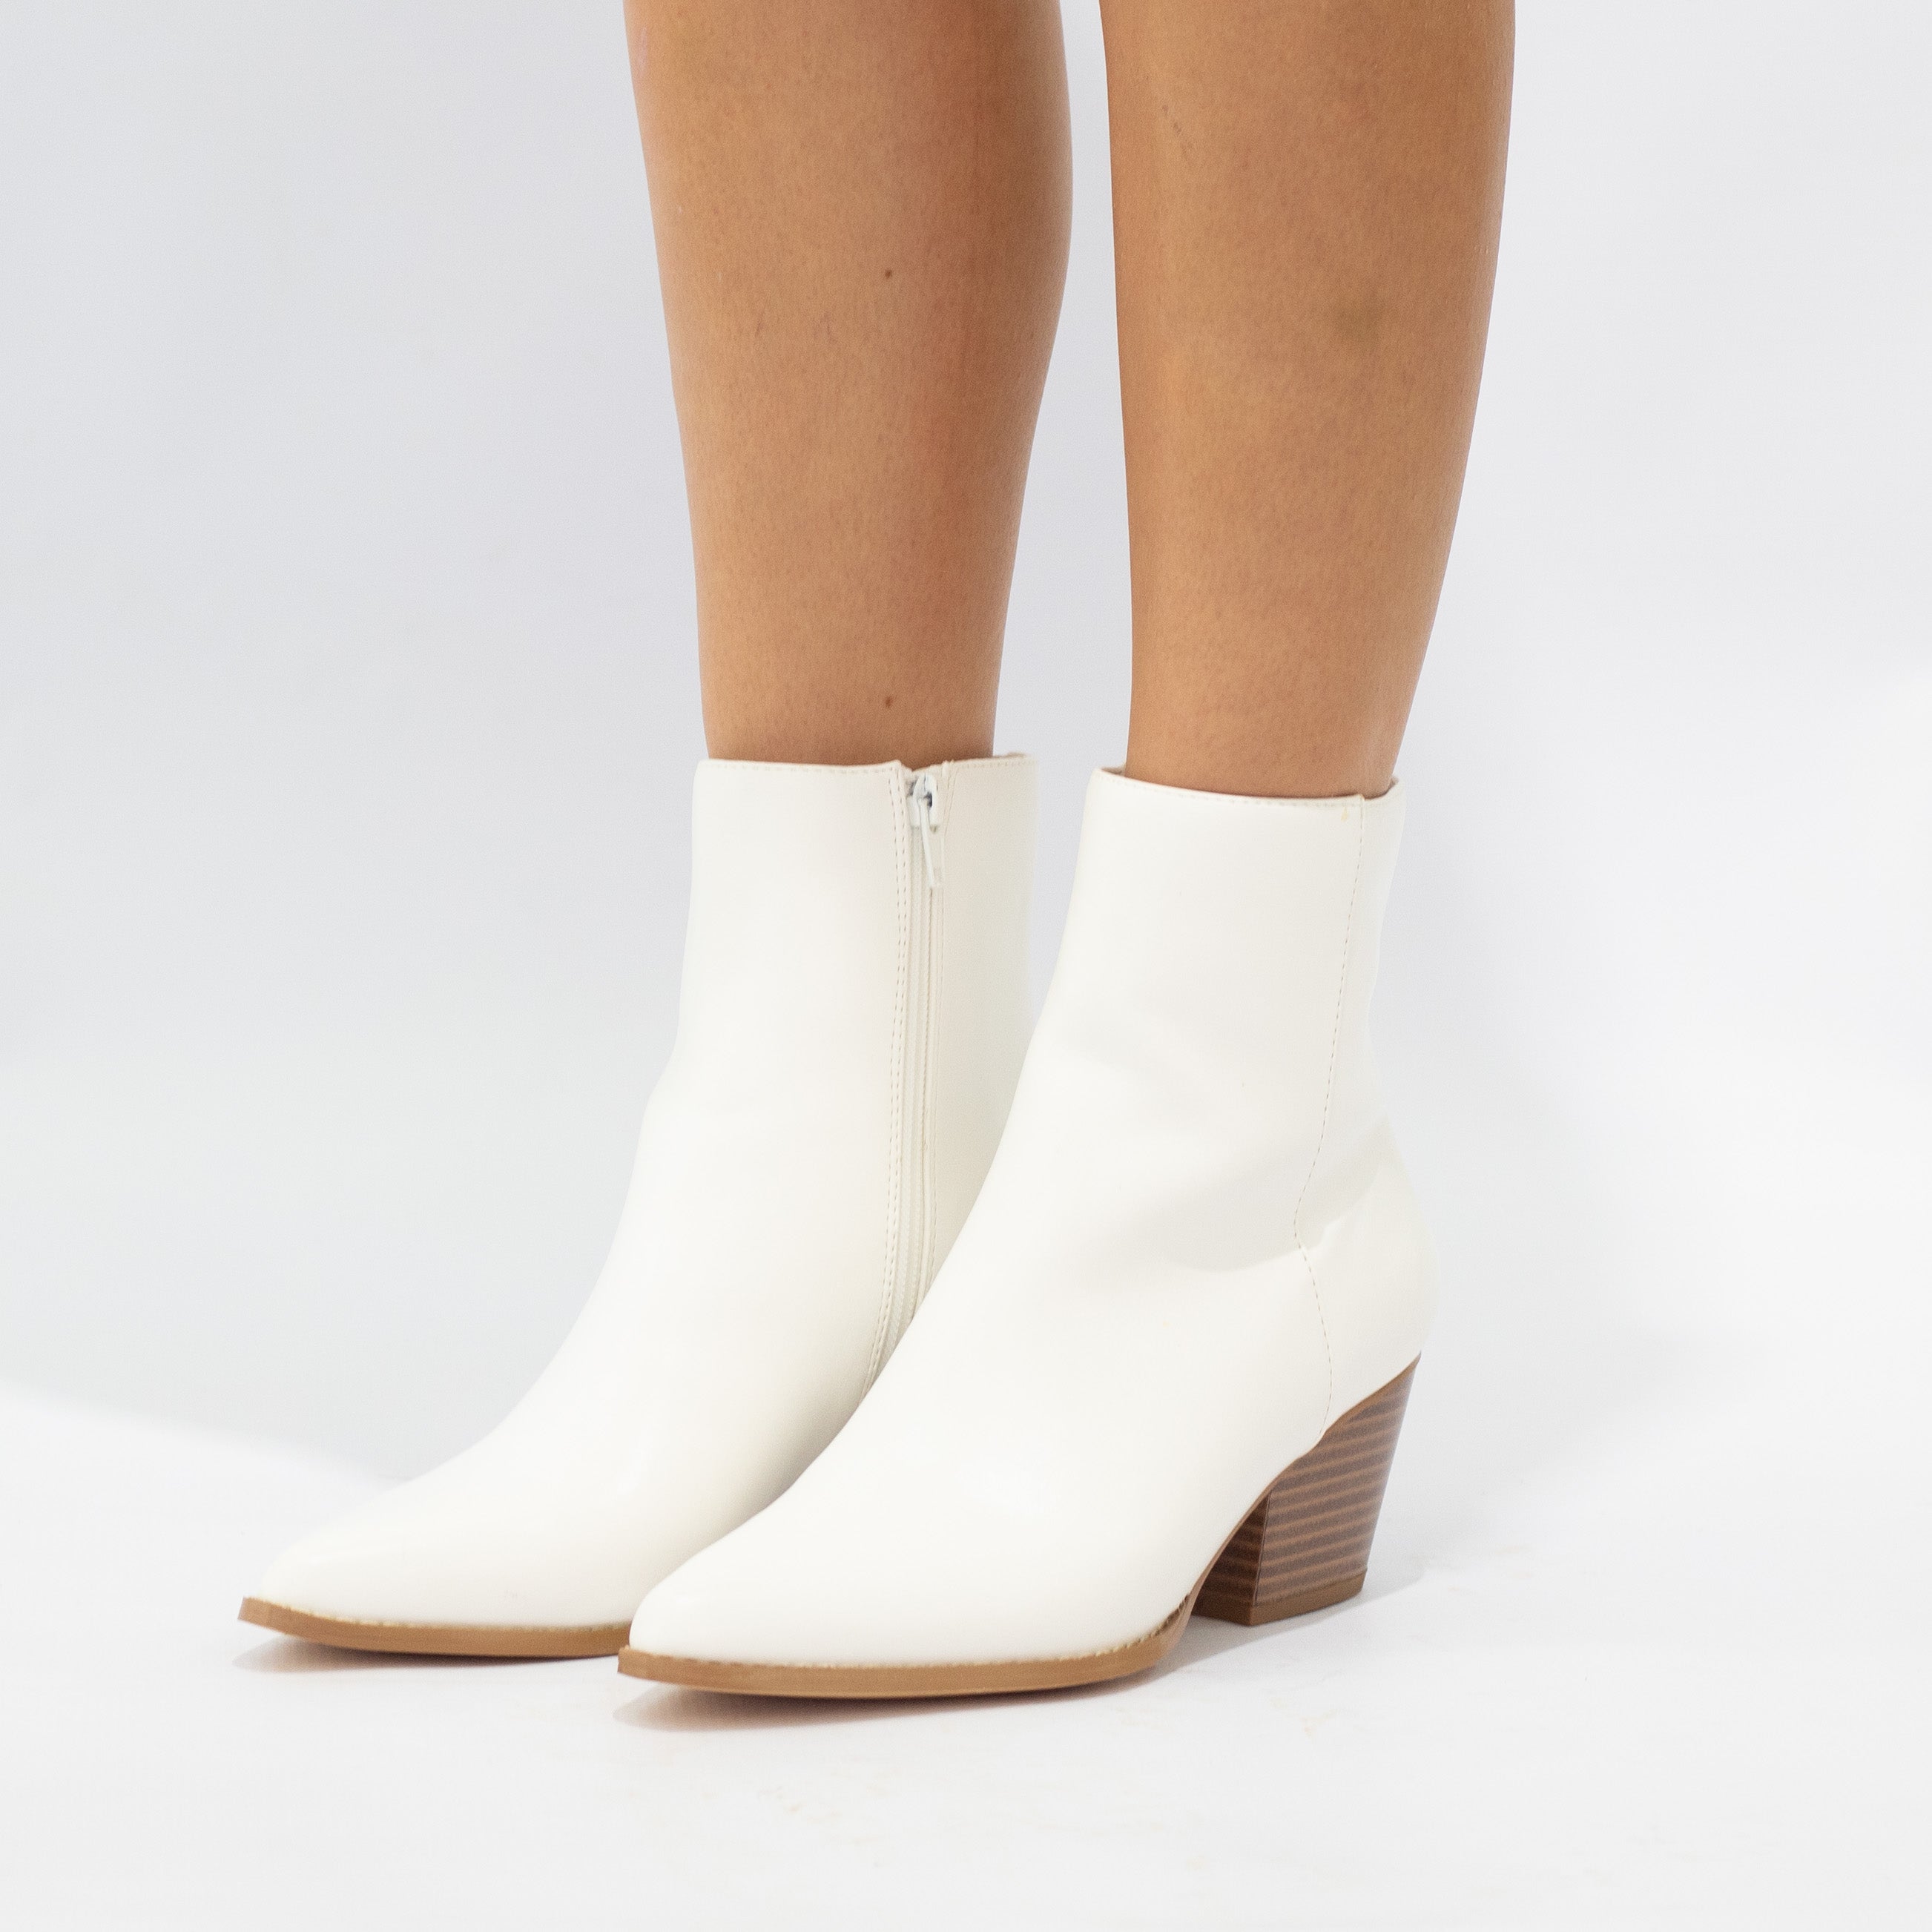 Noelle 6cm block heel LA08-18 PU ankle boot white